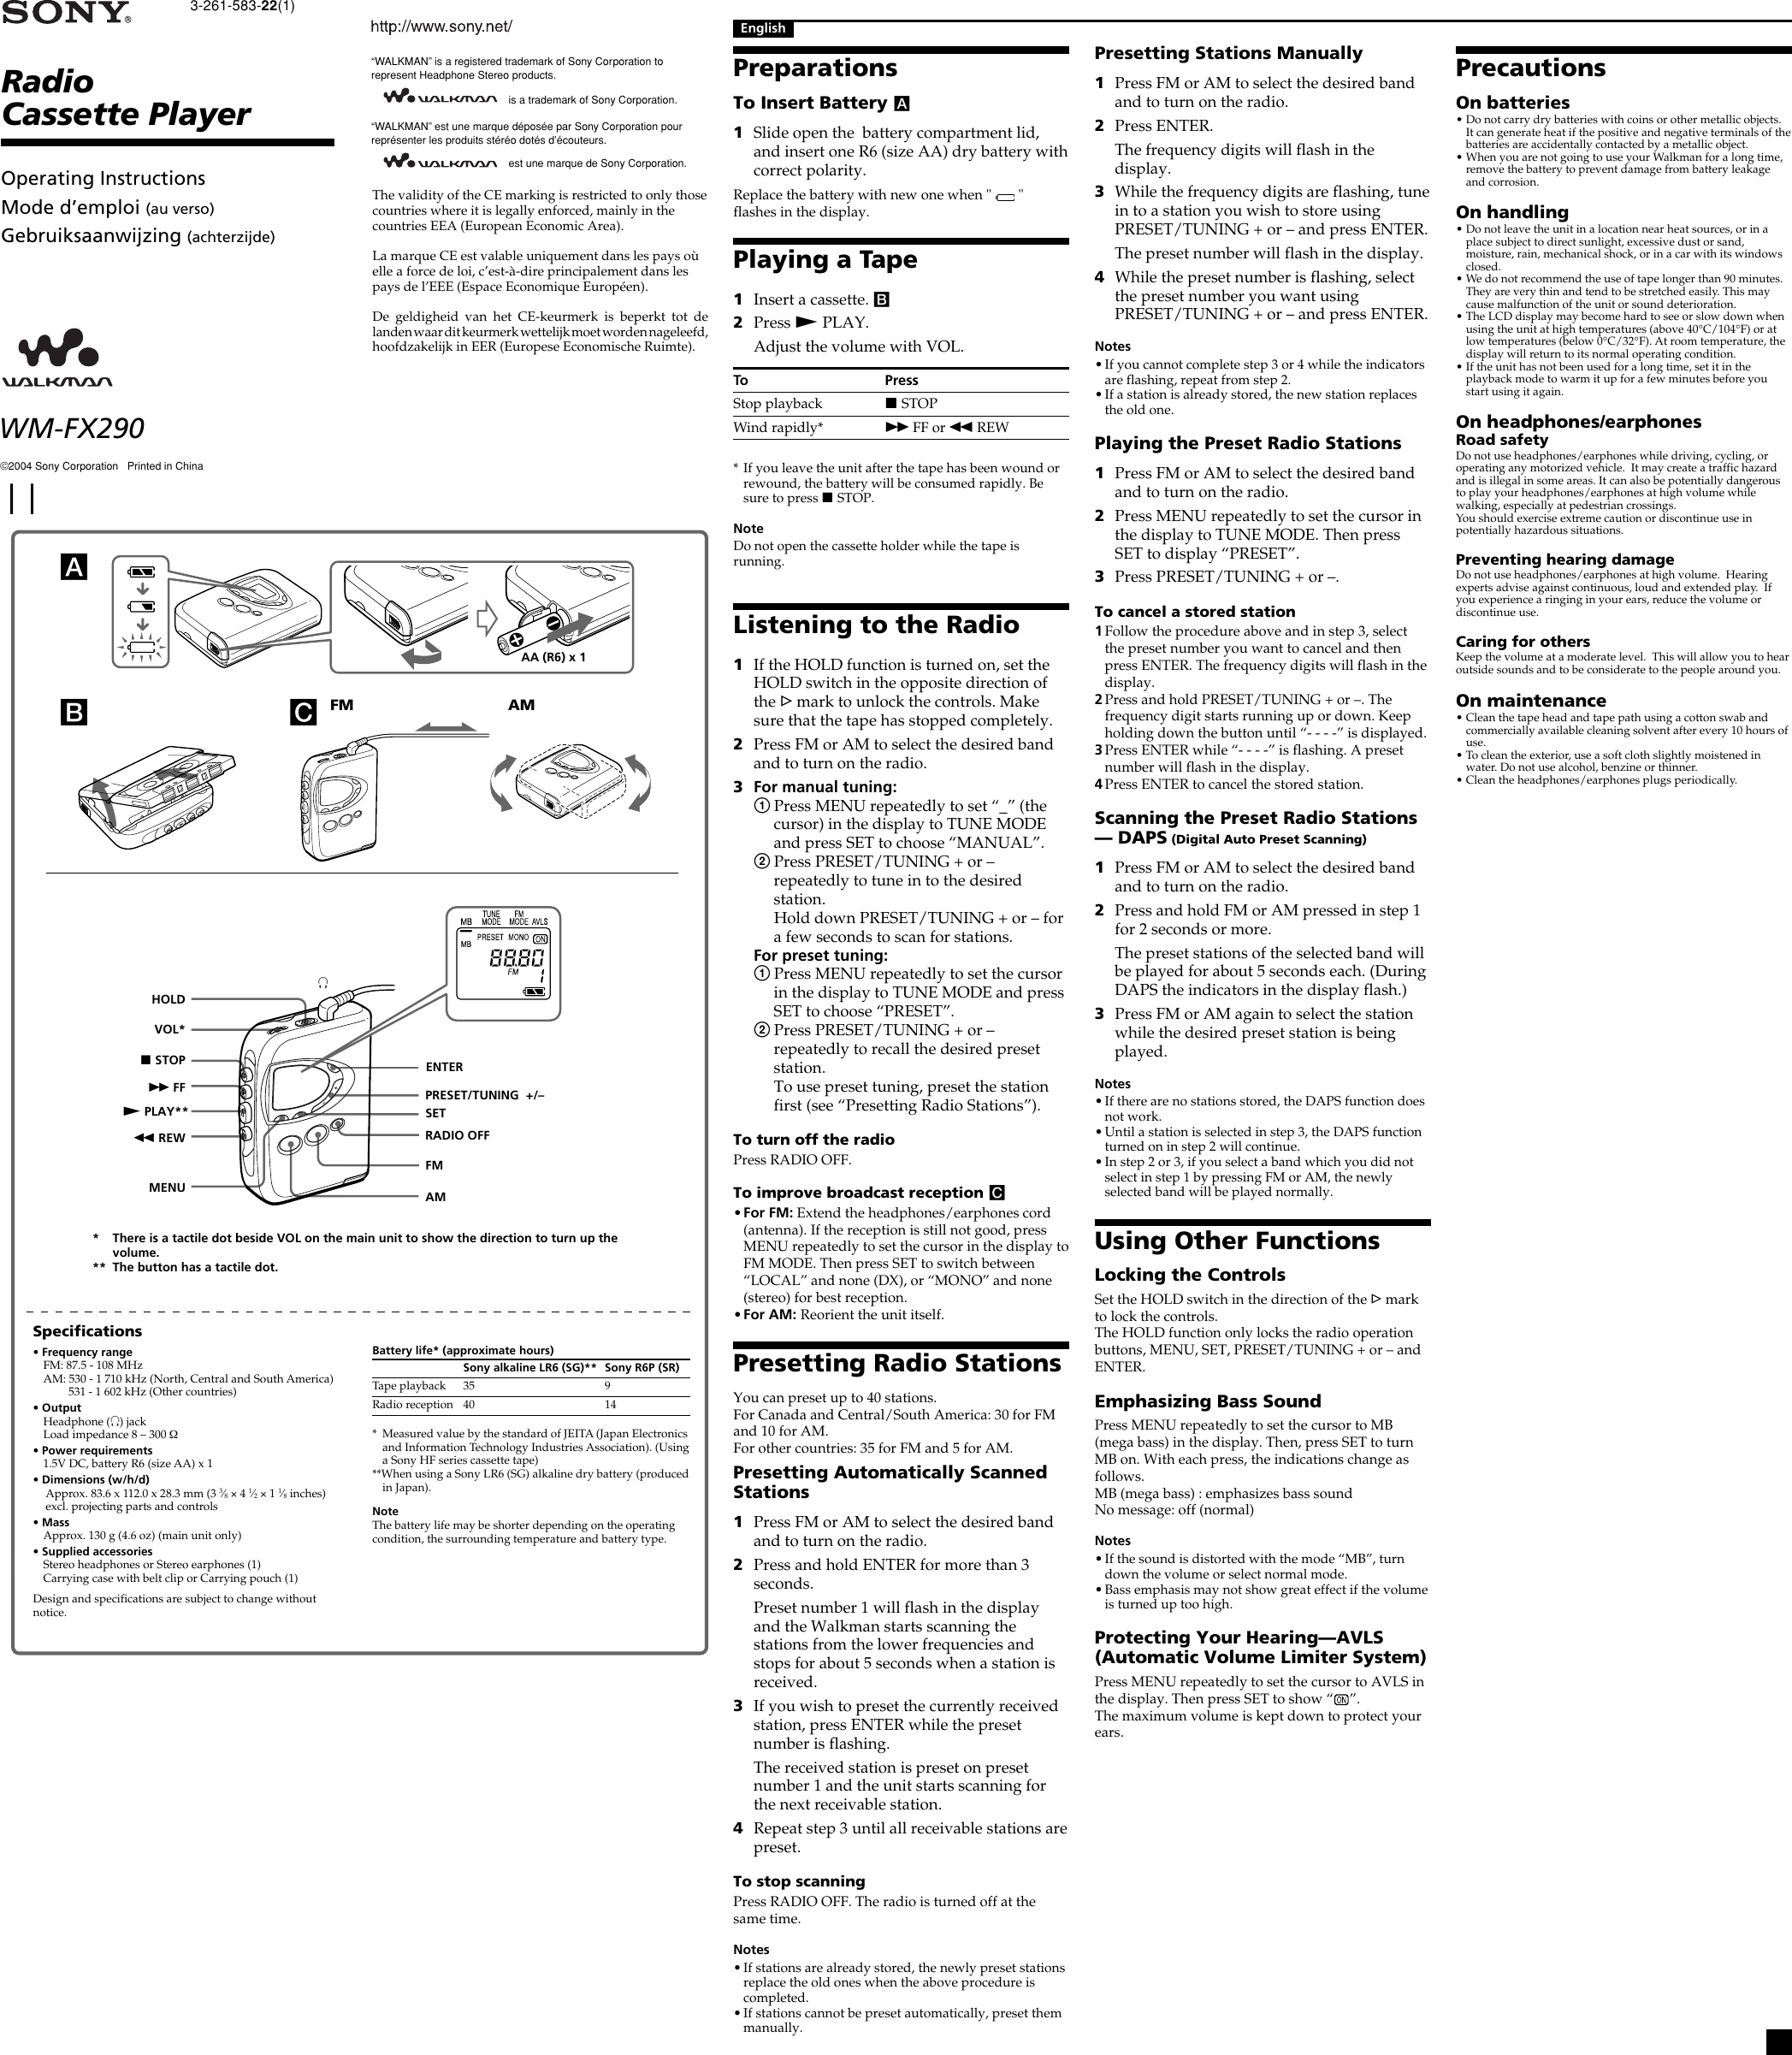 Sony Walkman Wm Fx290 Users Manual